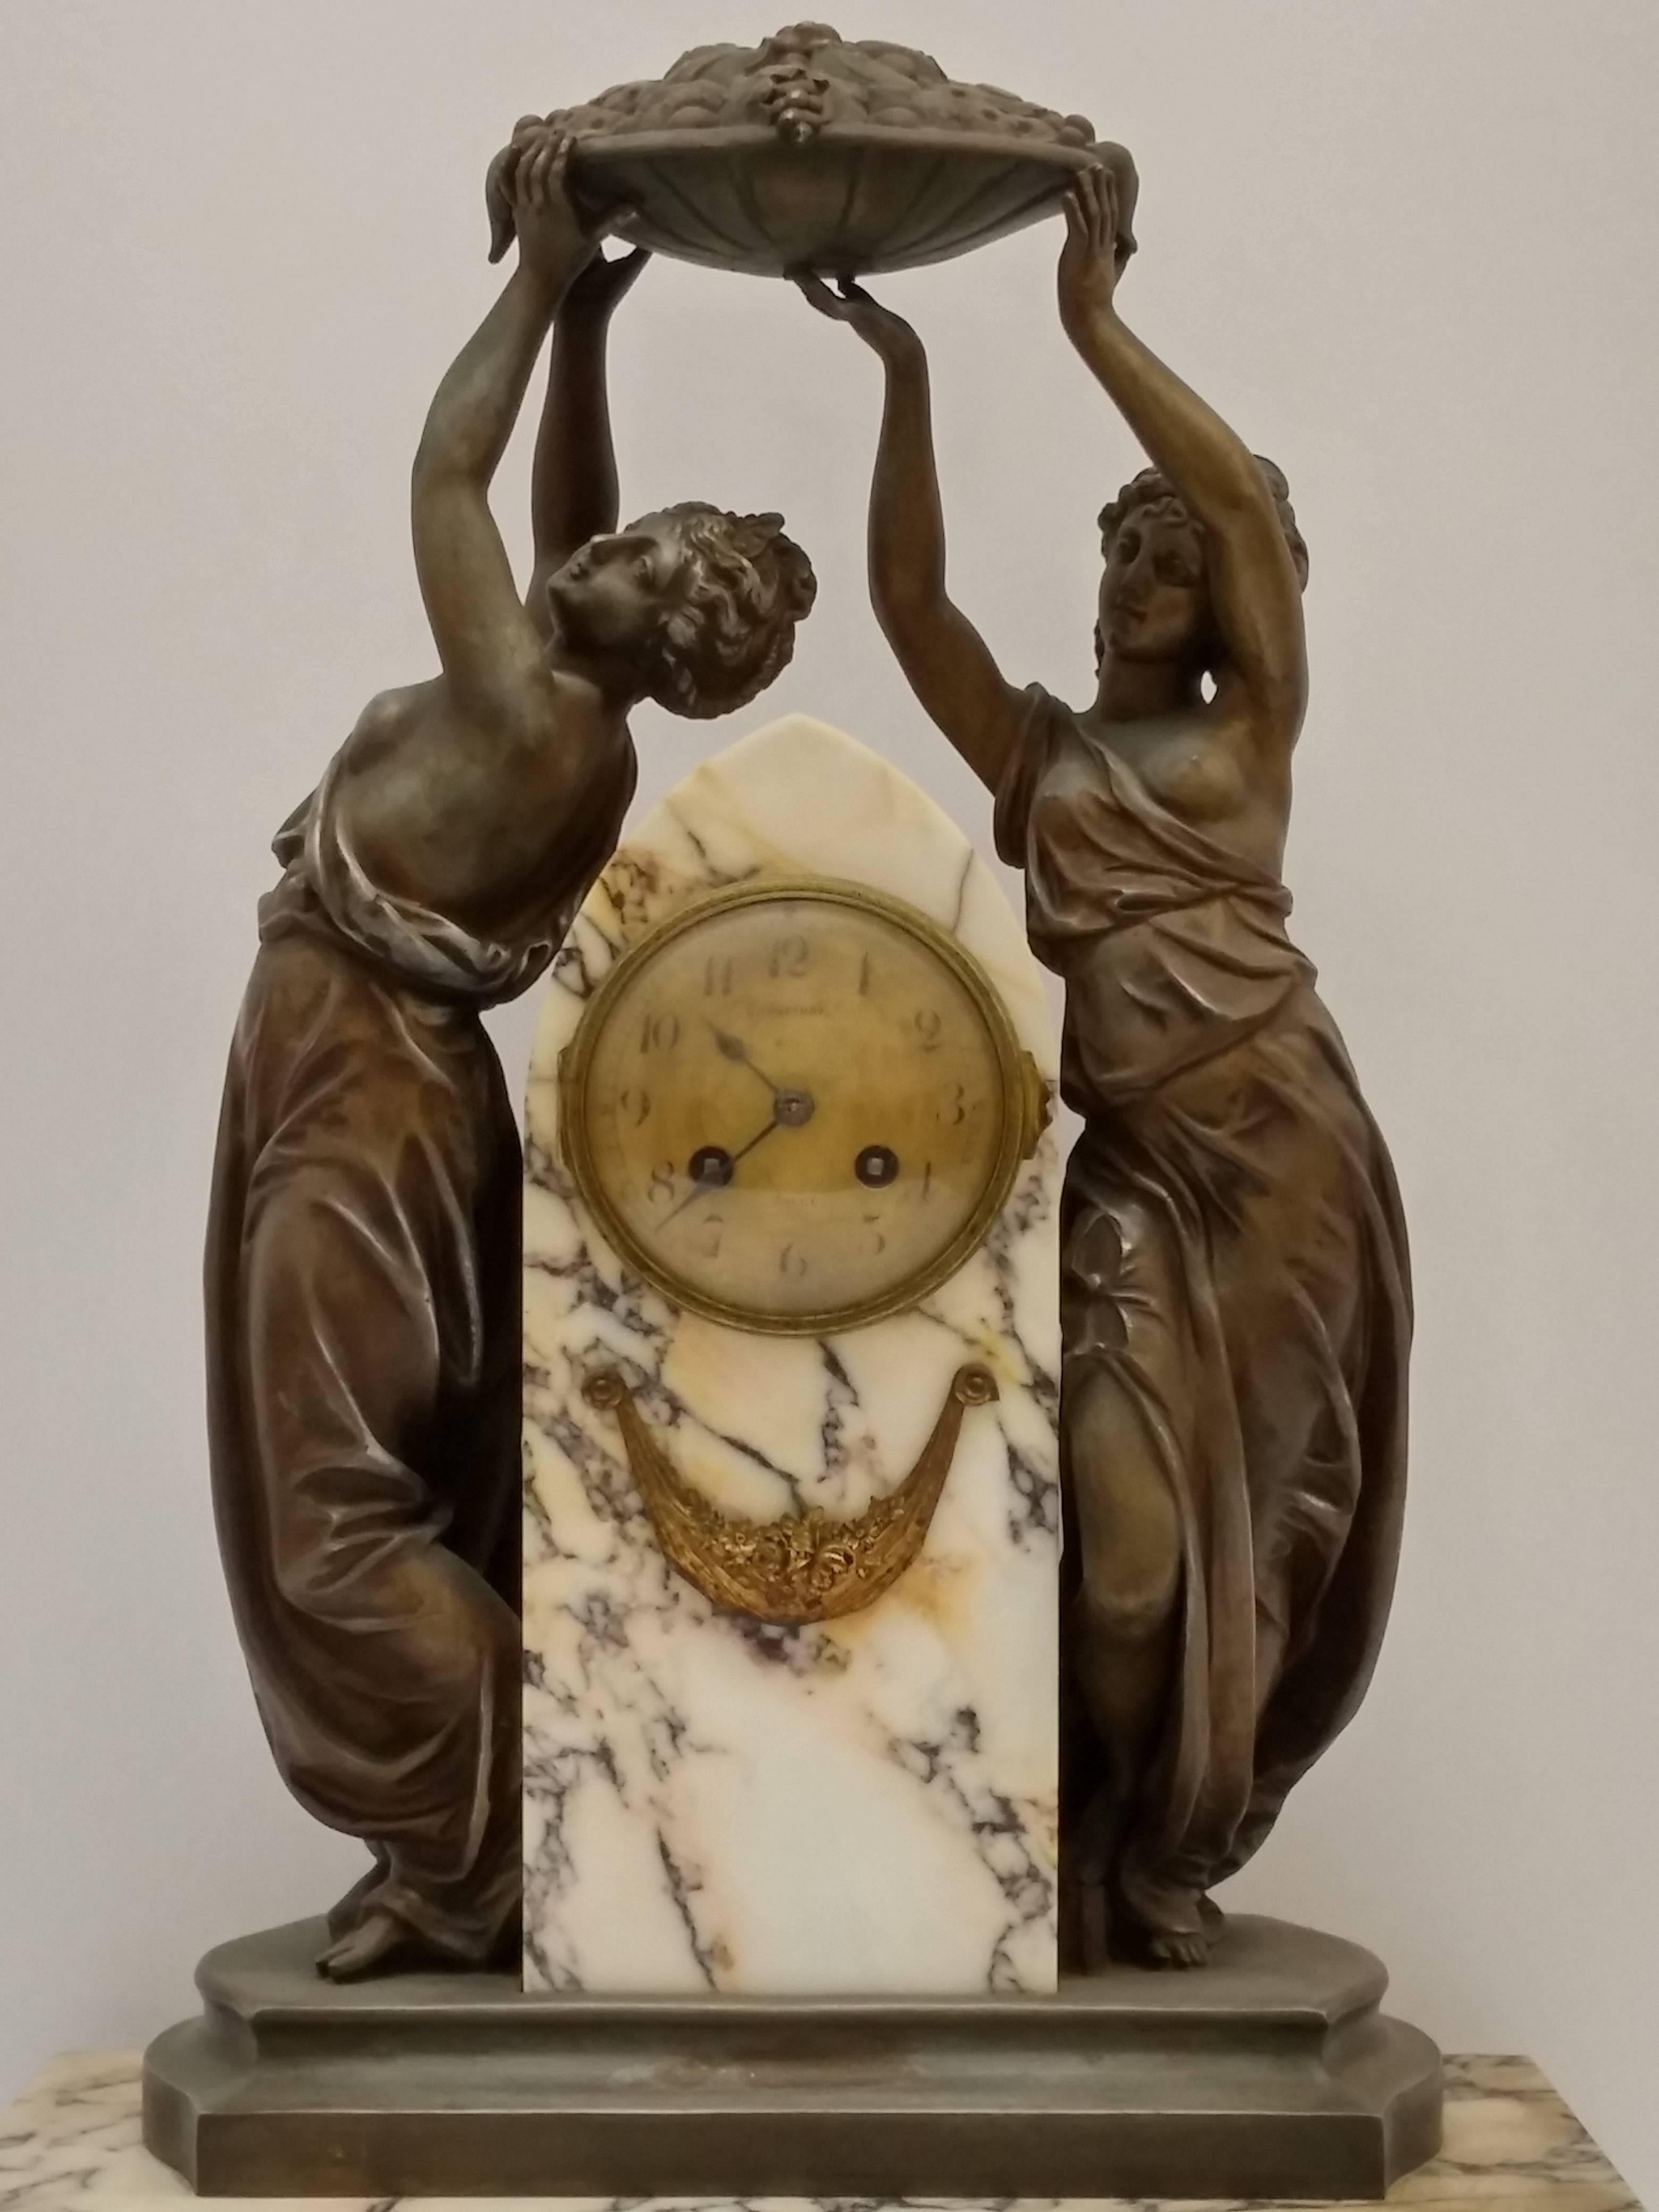 Sculpture française Art nouveau avec une horloge décorée d'un couple de femmes se réjouissant de la récolte de la saison. En très bon état. Vendu tel quel en ce qui concerne le mouvement. Dépôt gratuit dans la région des trois États. Nous sommes la